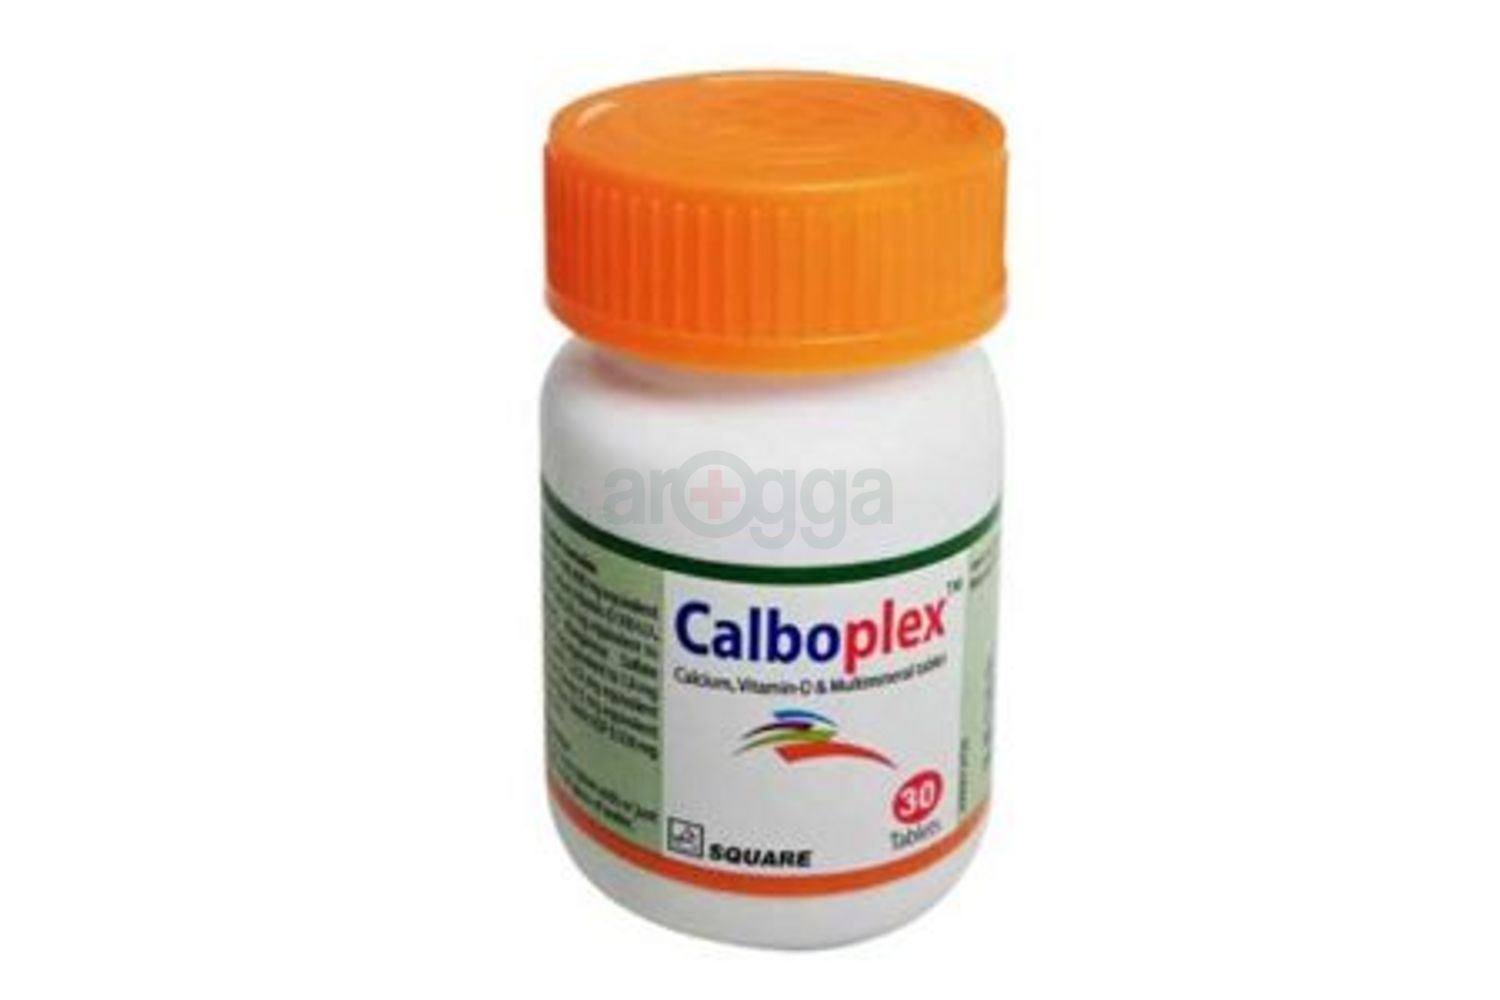 Calboplex